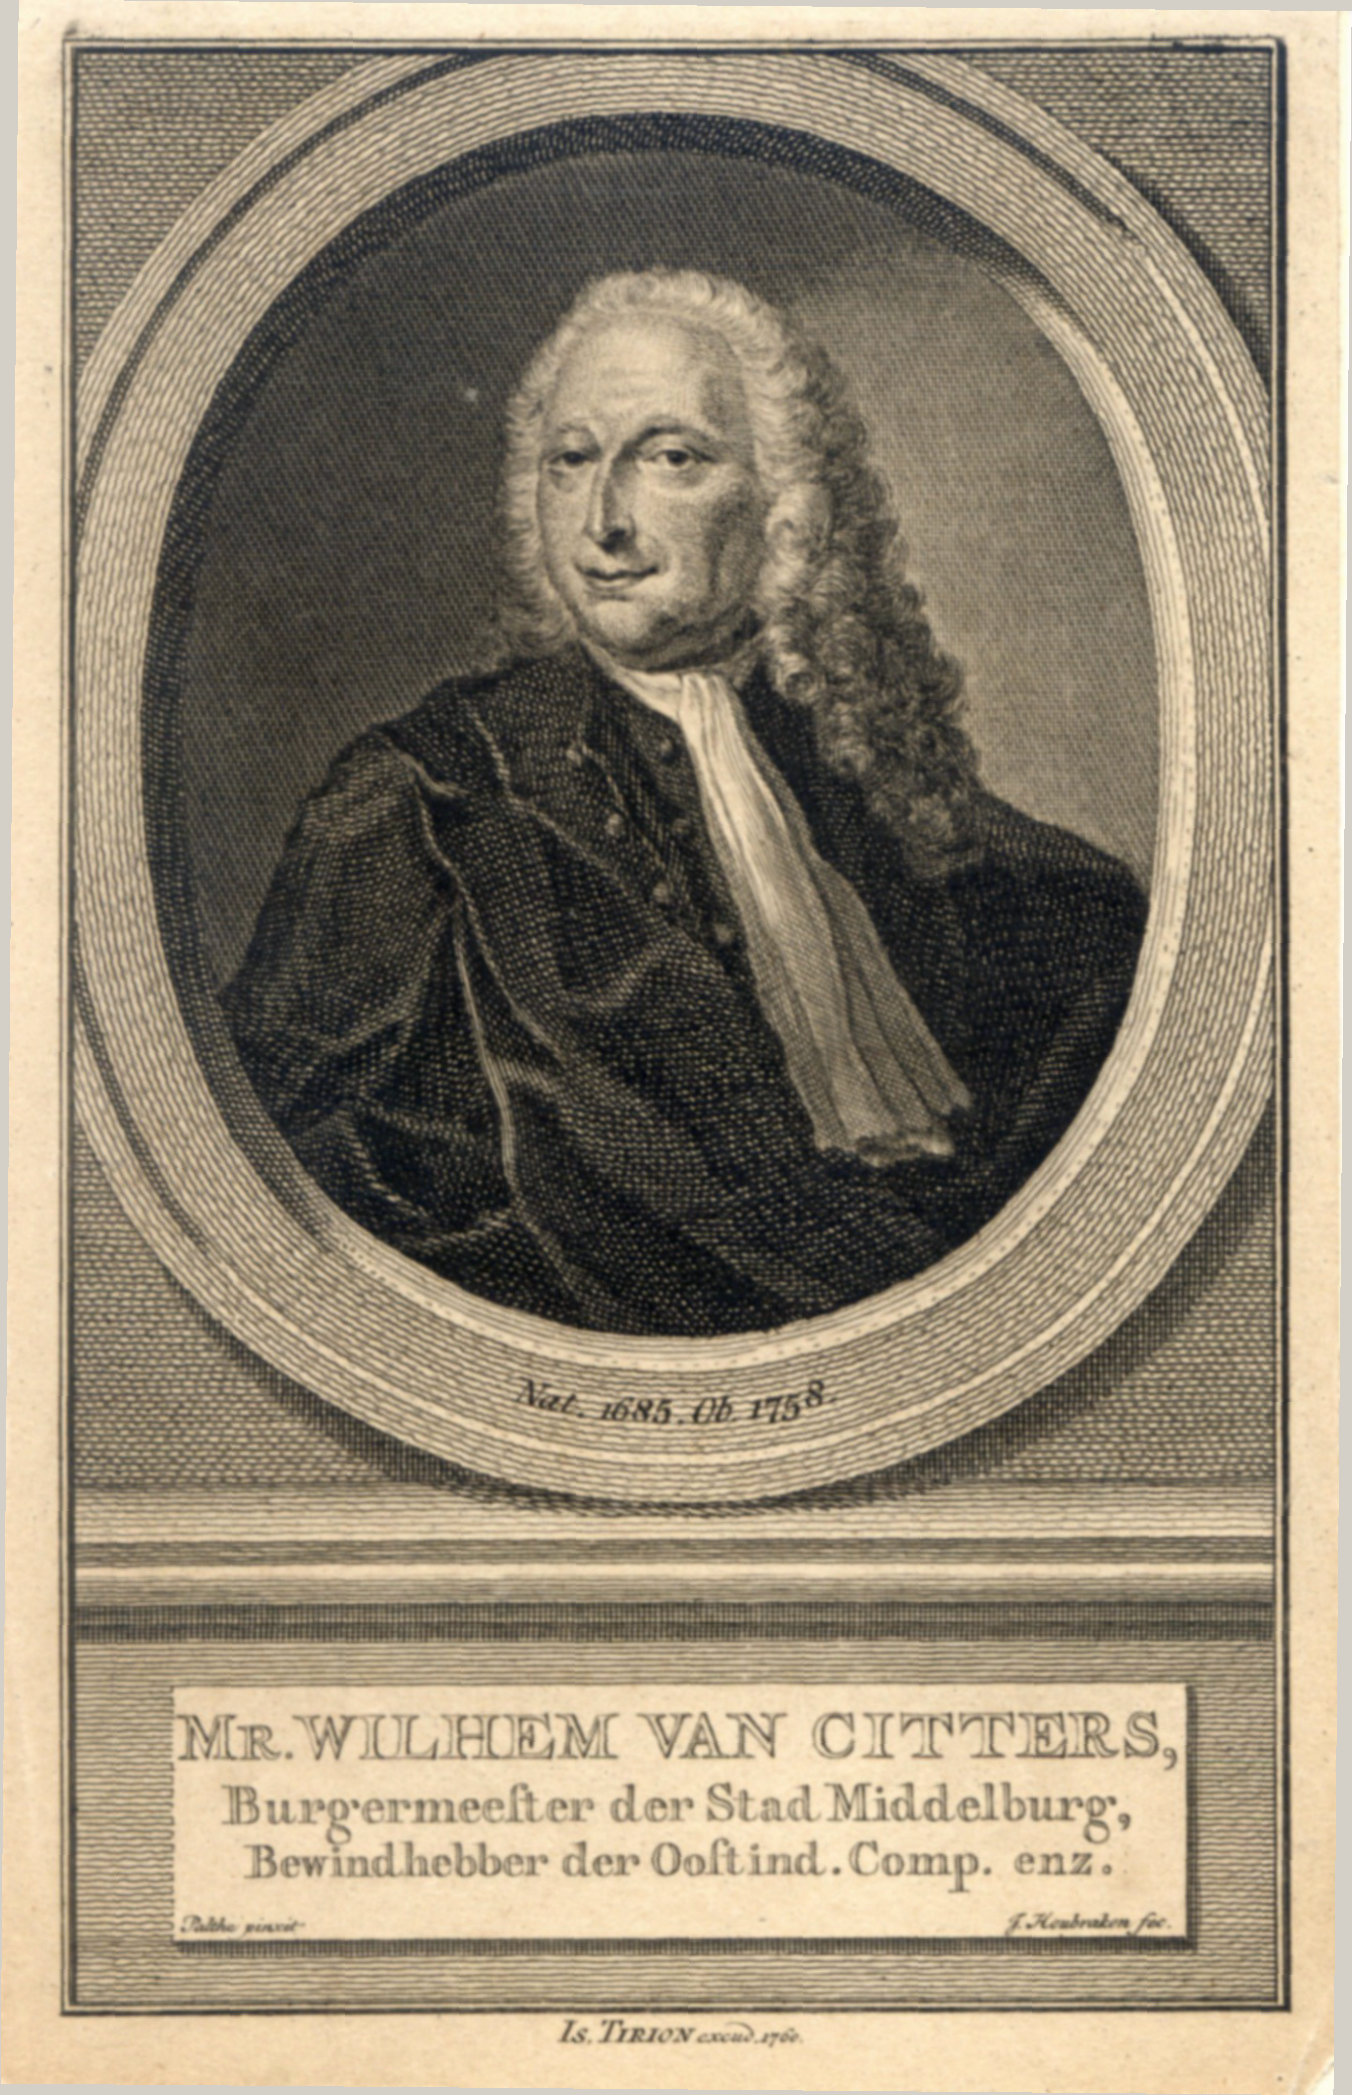 Mr. Wilhem van Citters, burgemeester van Middelburg, 1760.